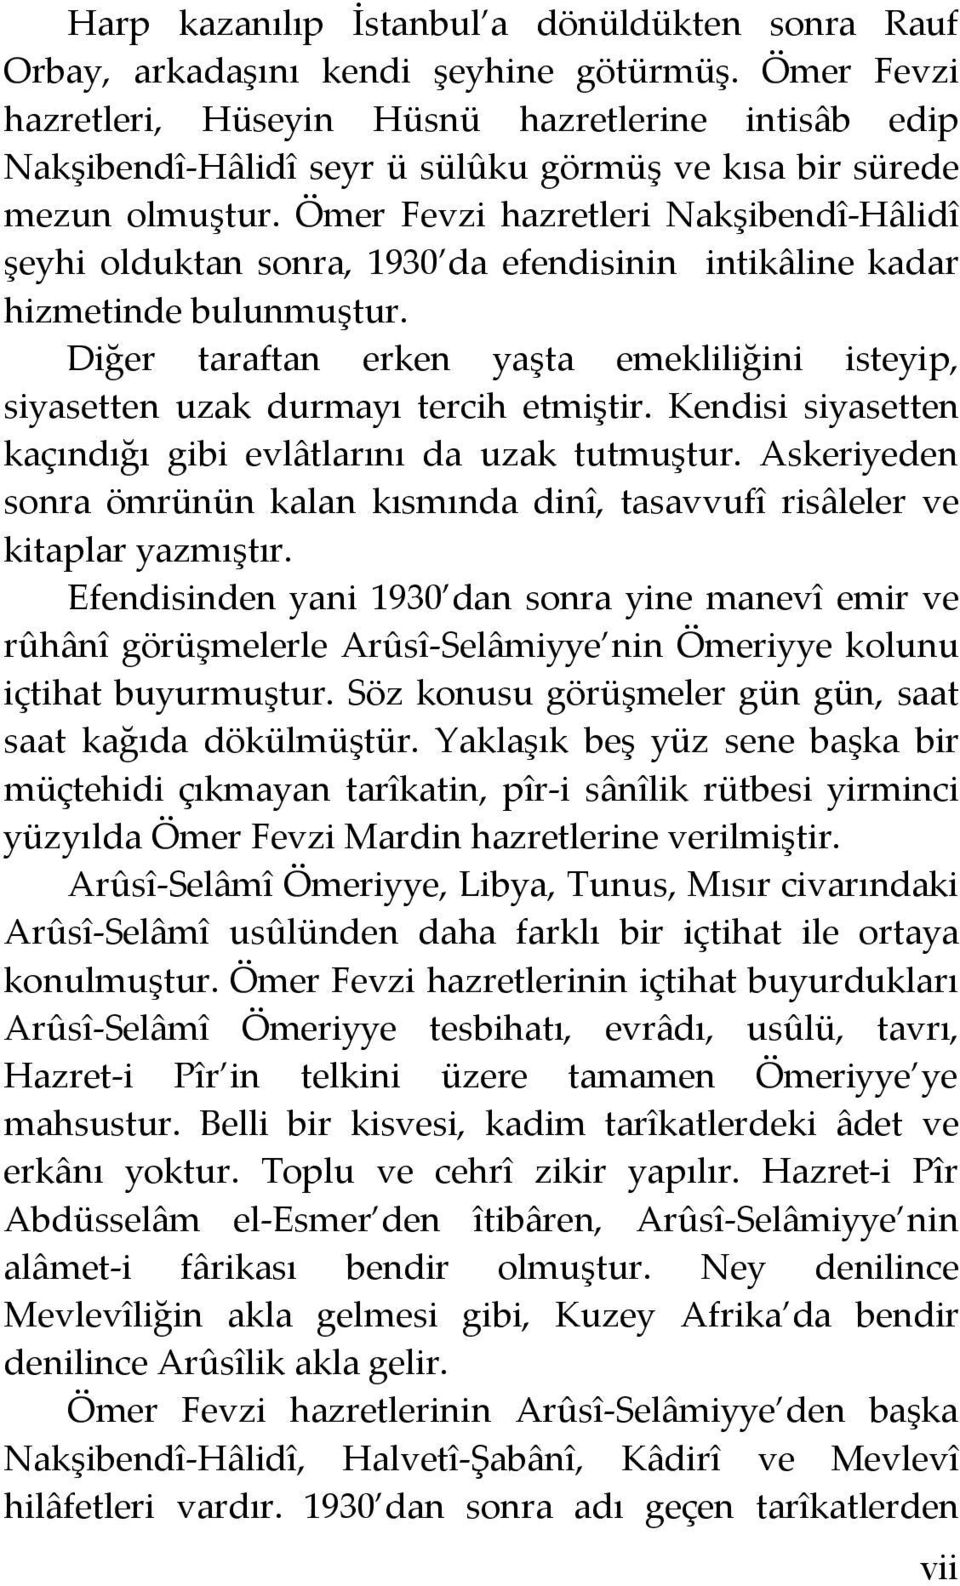 Ömer Fevzi hazretleri Nakşibendî-Hâlidî şeyhi olduktan sonra, 1930 da efendisinin intikâline kadar hizmetinde bulunmuştur.